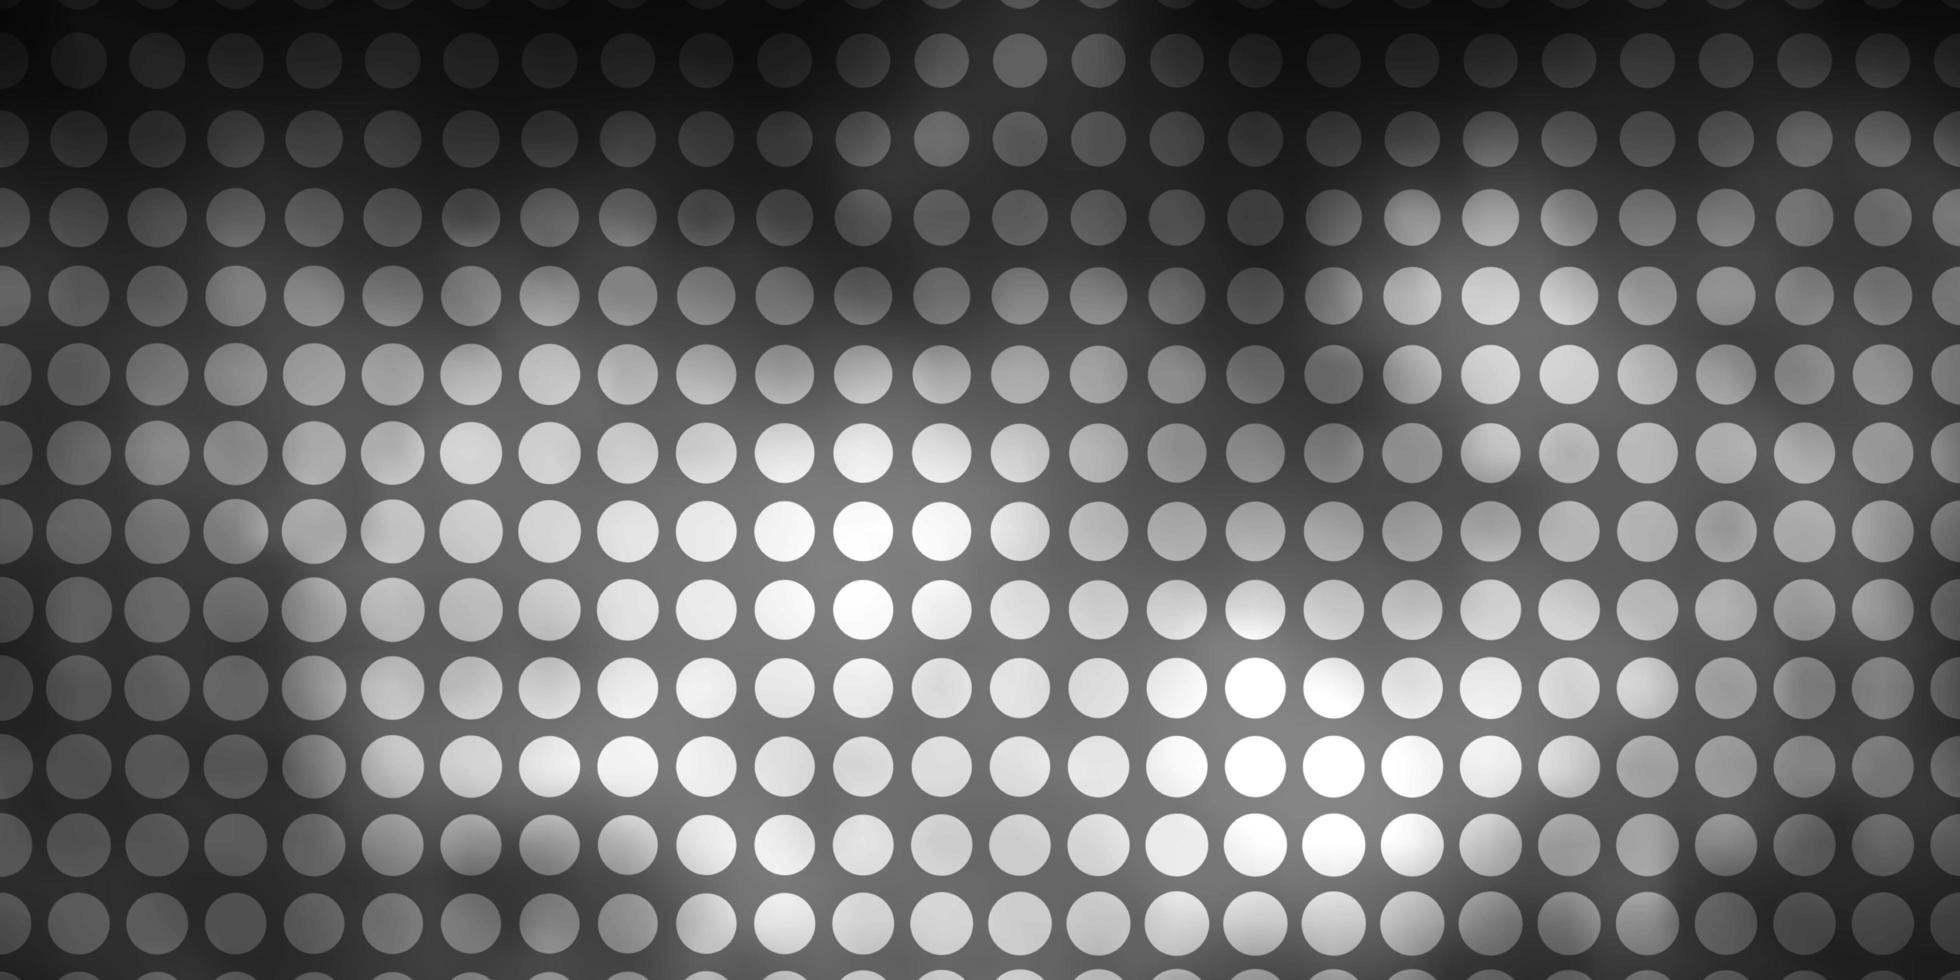 sfondo vettoriale grigio chiaro con cerchi.